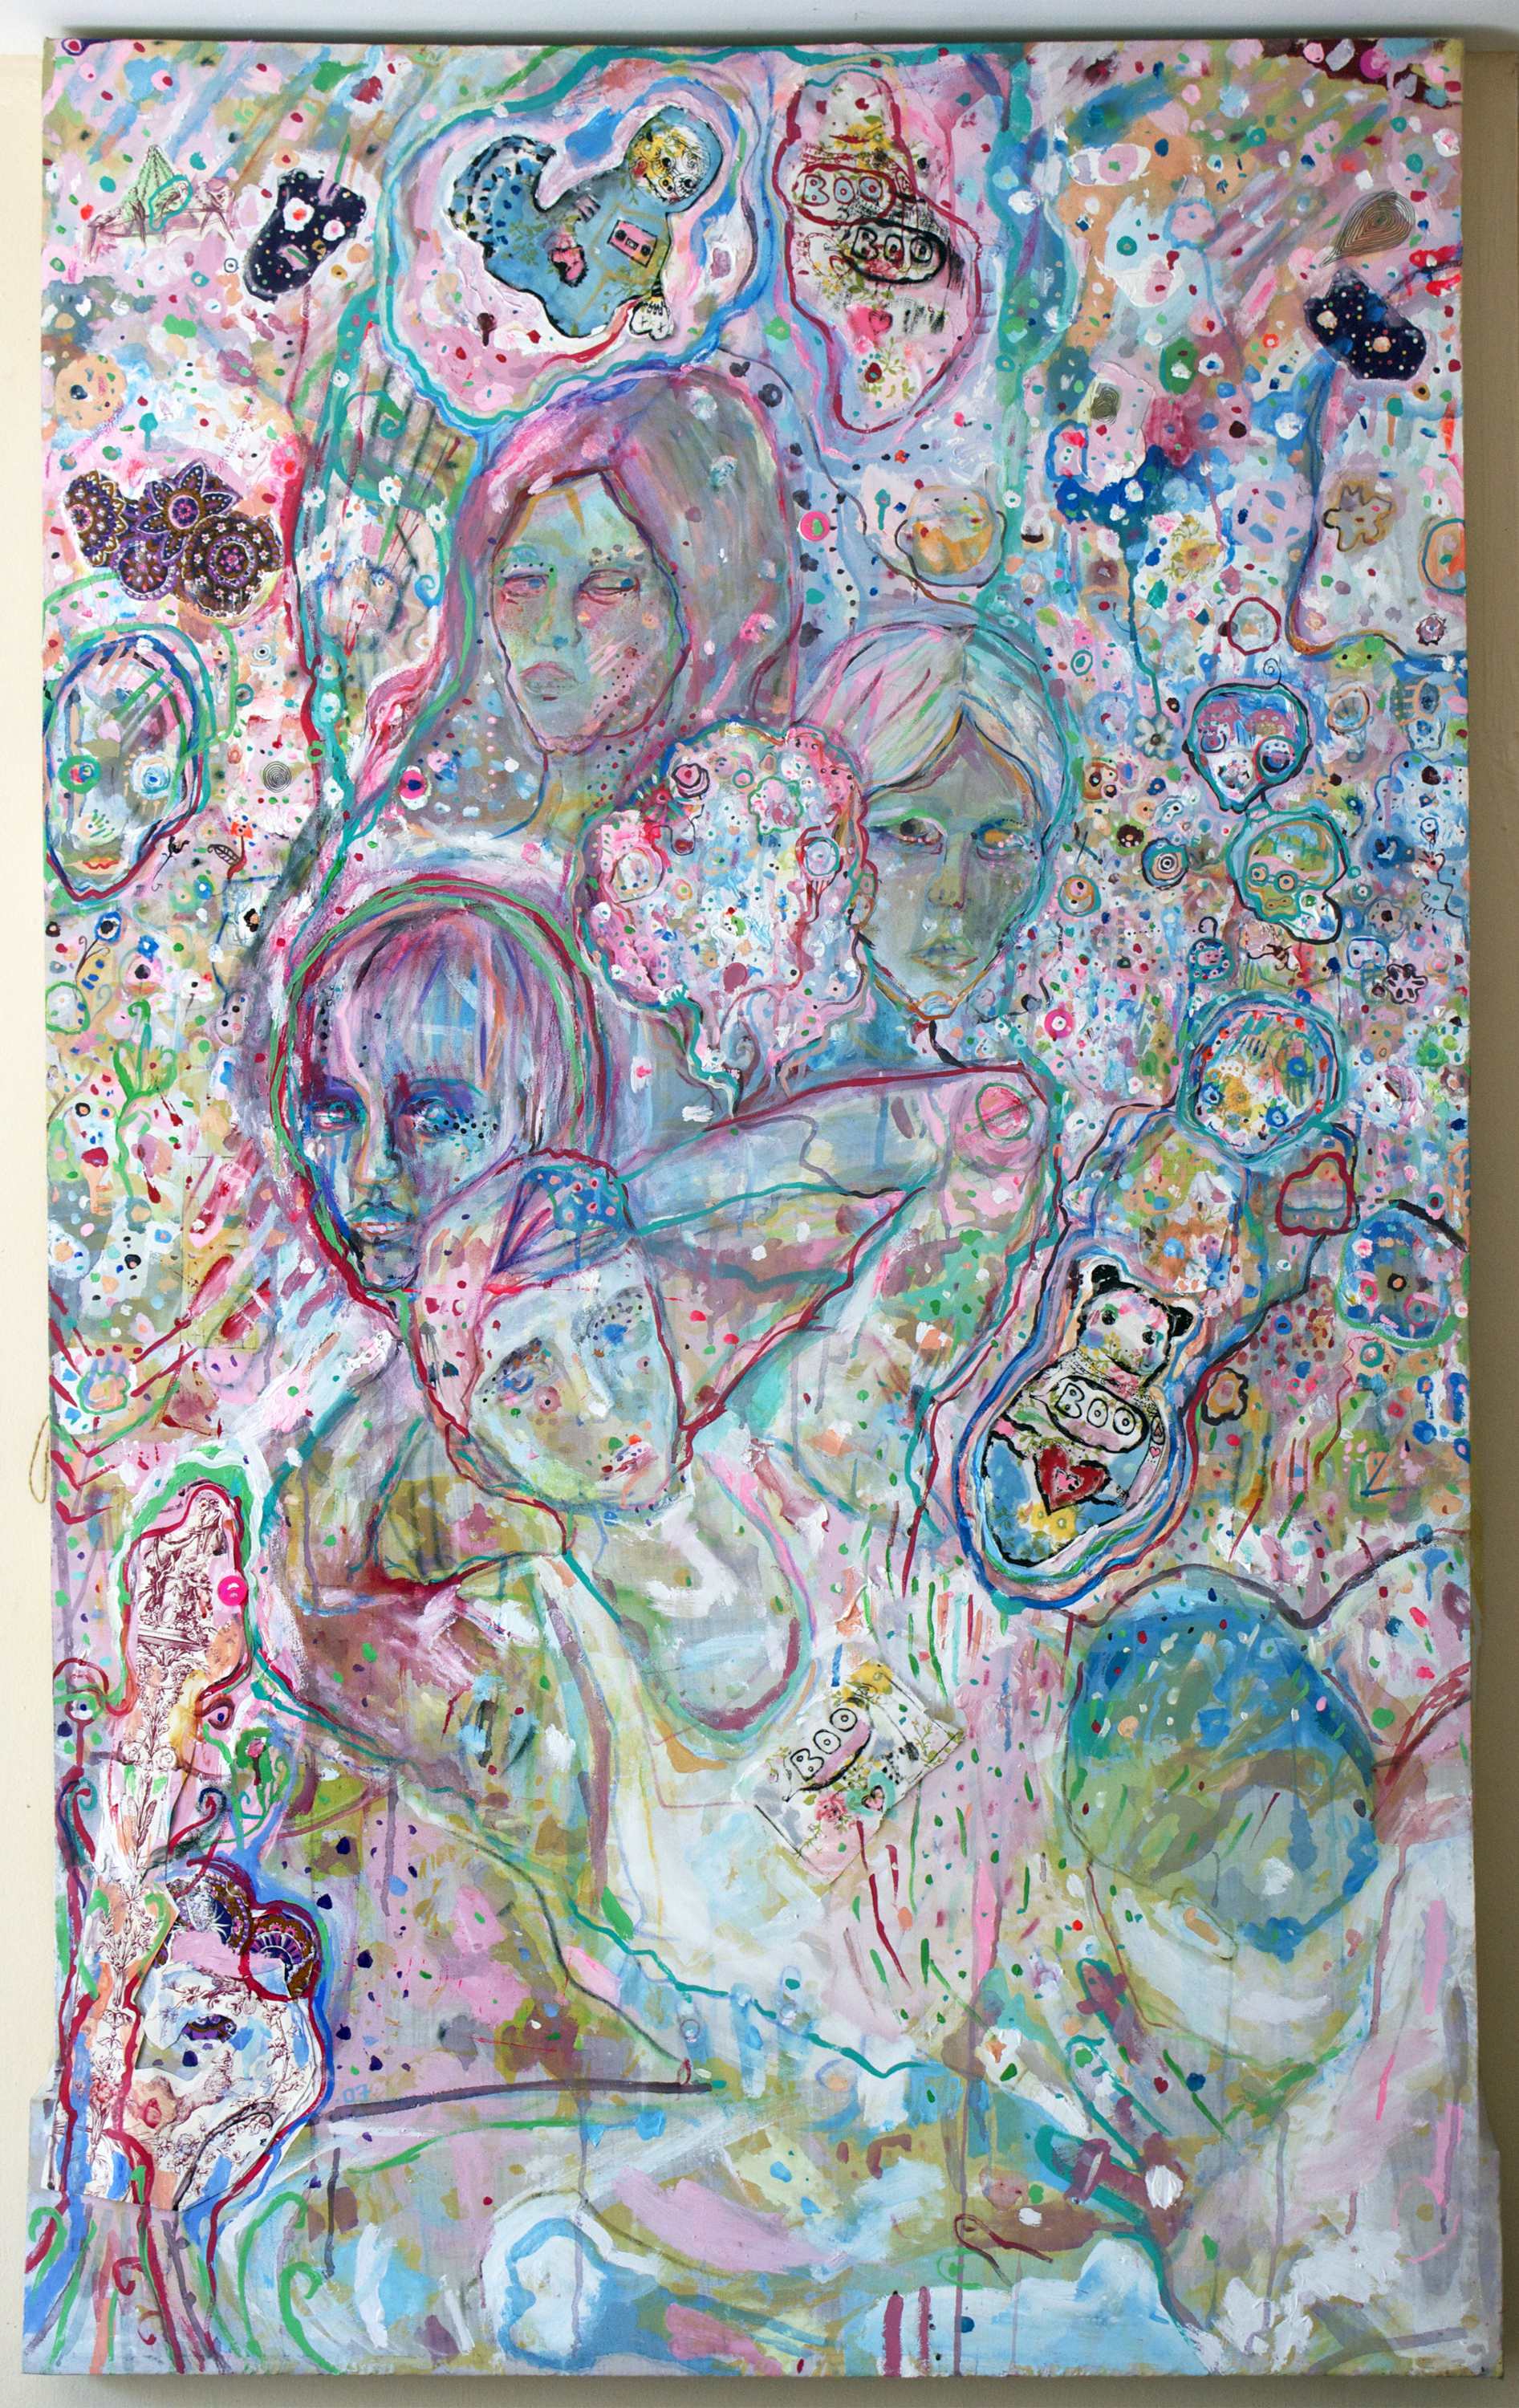           Gang-Bang Gang, mixed media on canvas, 59x38", 2007 